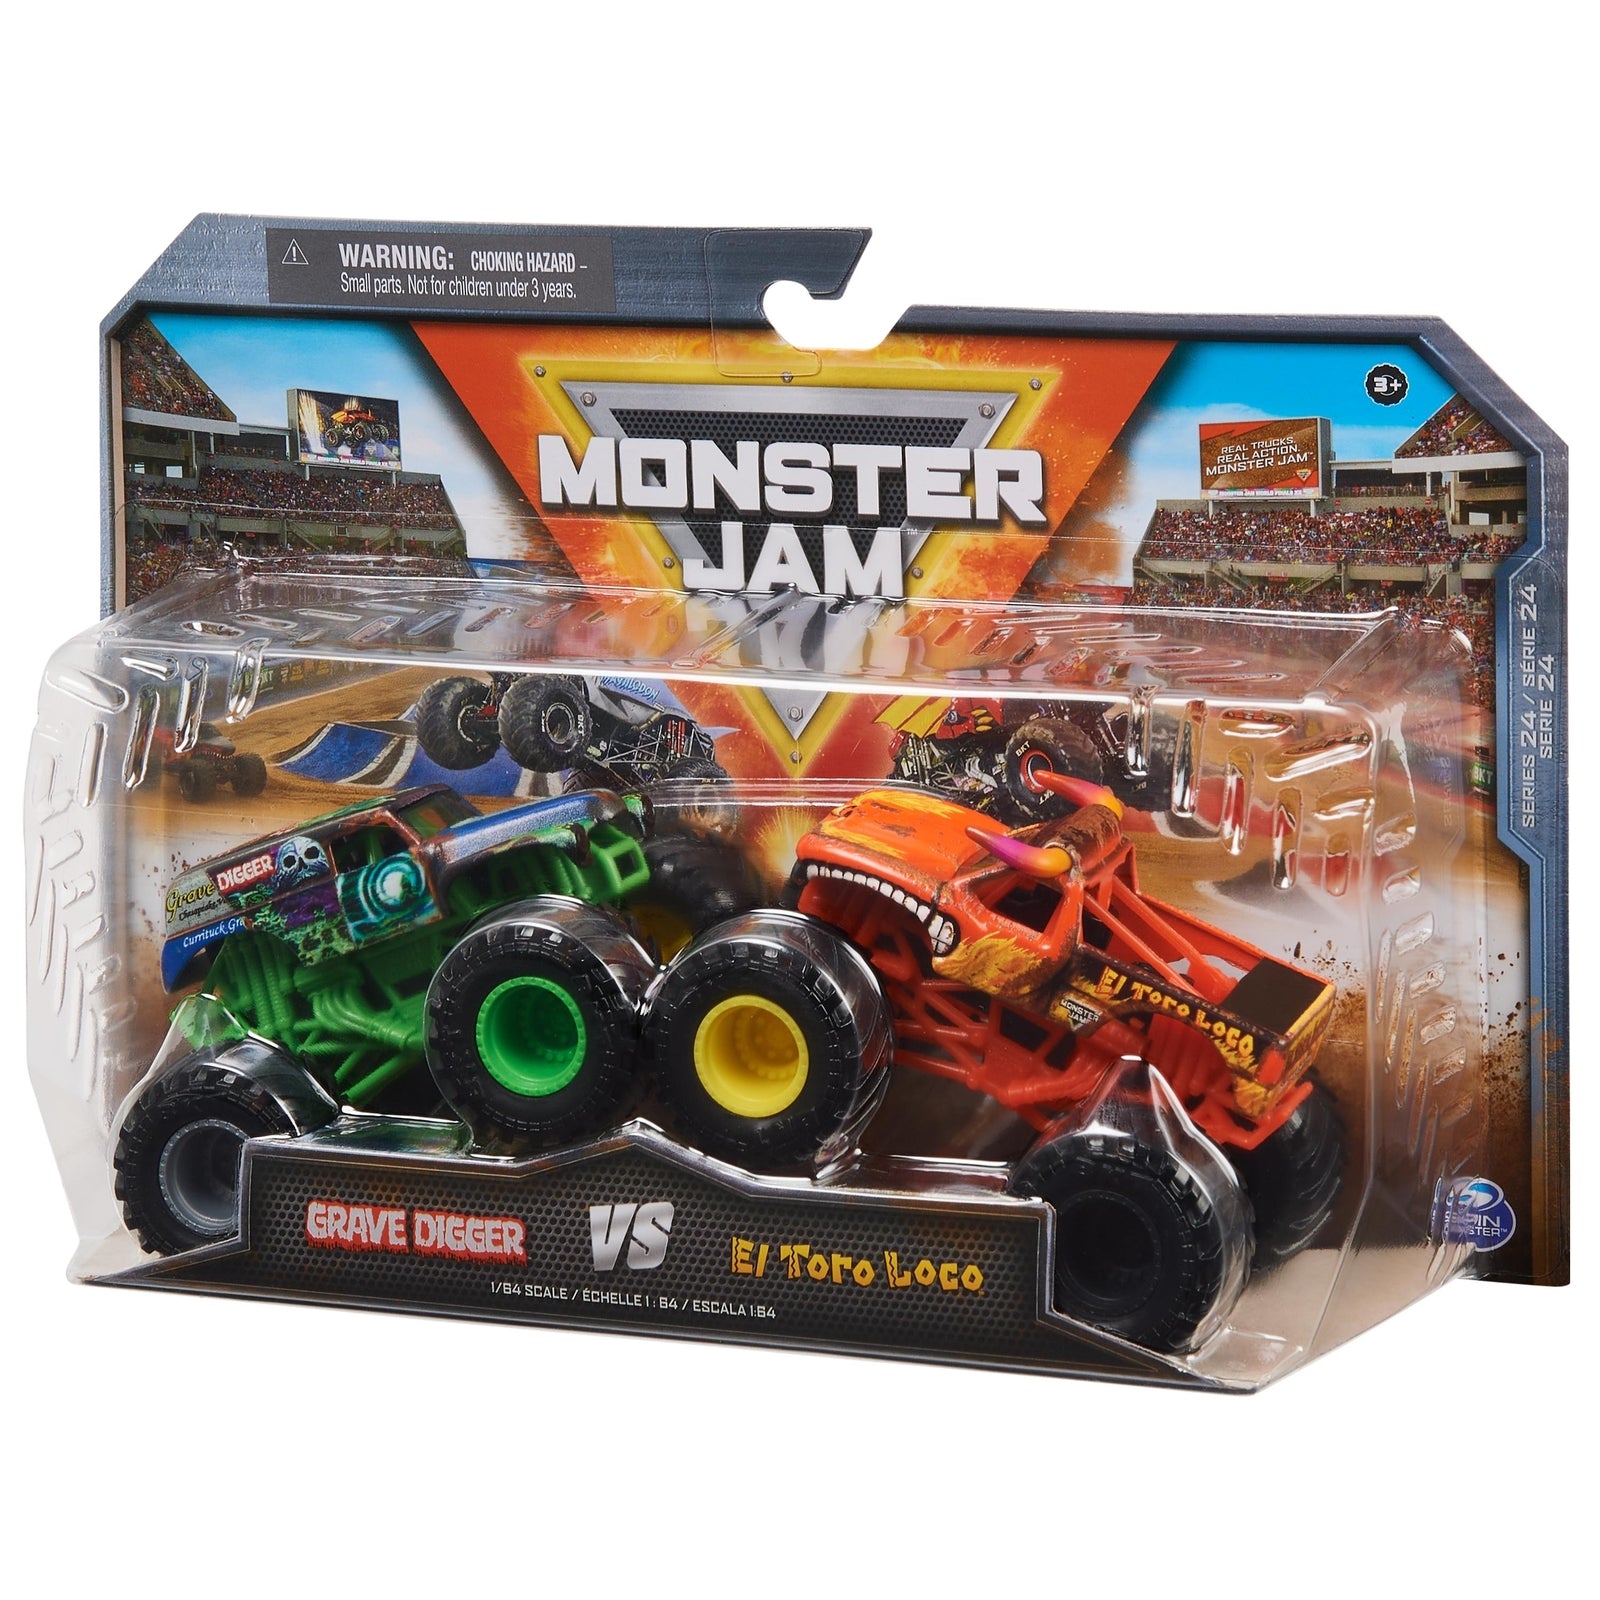 Monster Jam 2 Pack 1:64 Series 22 - Grave Digger vs El Toro Loco